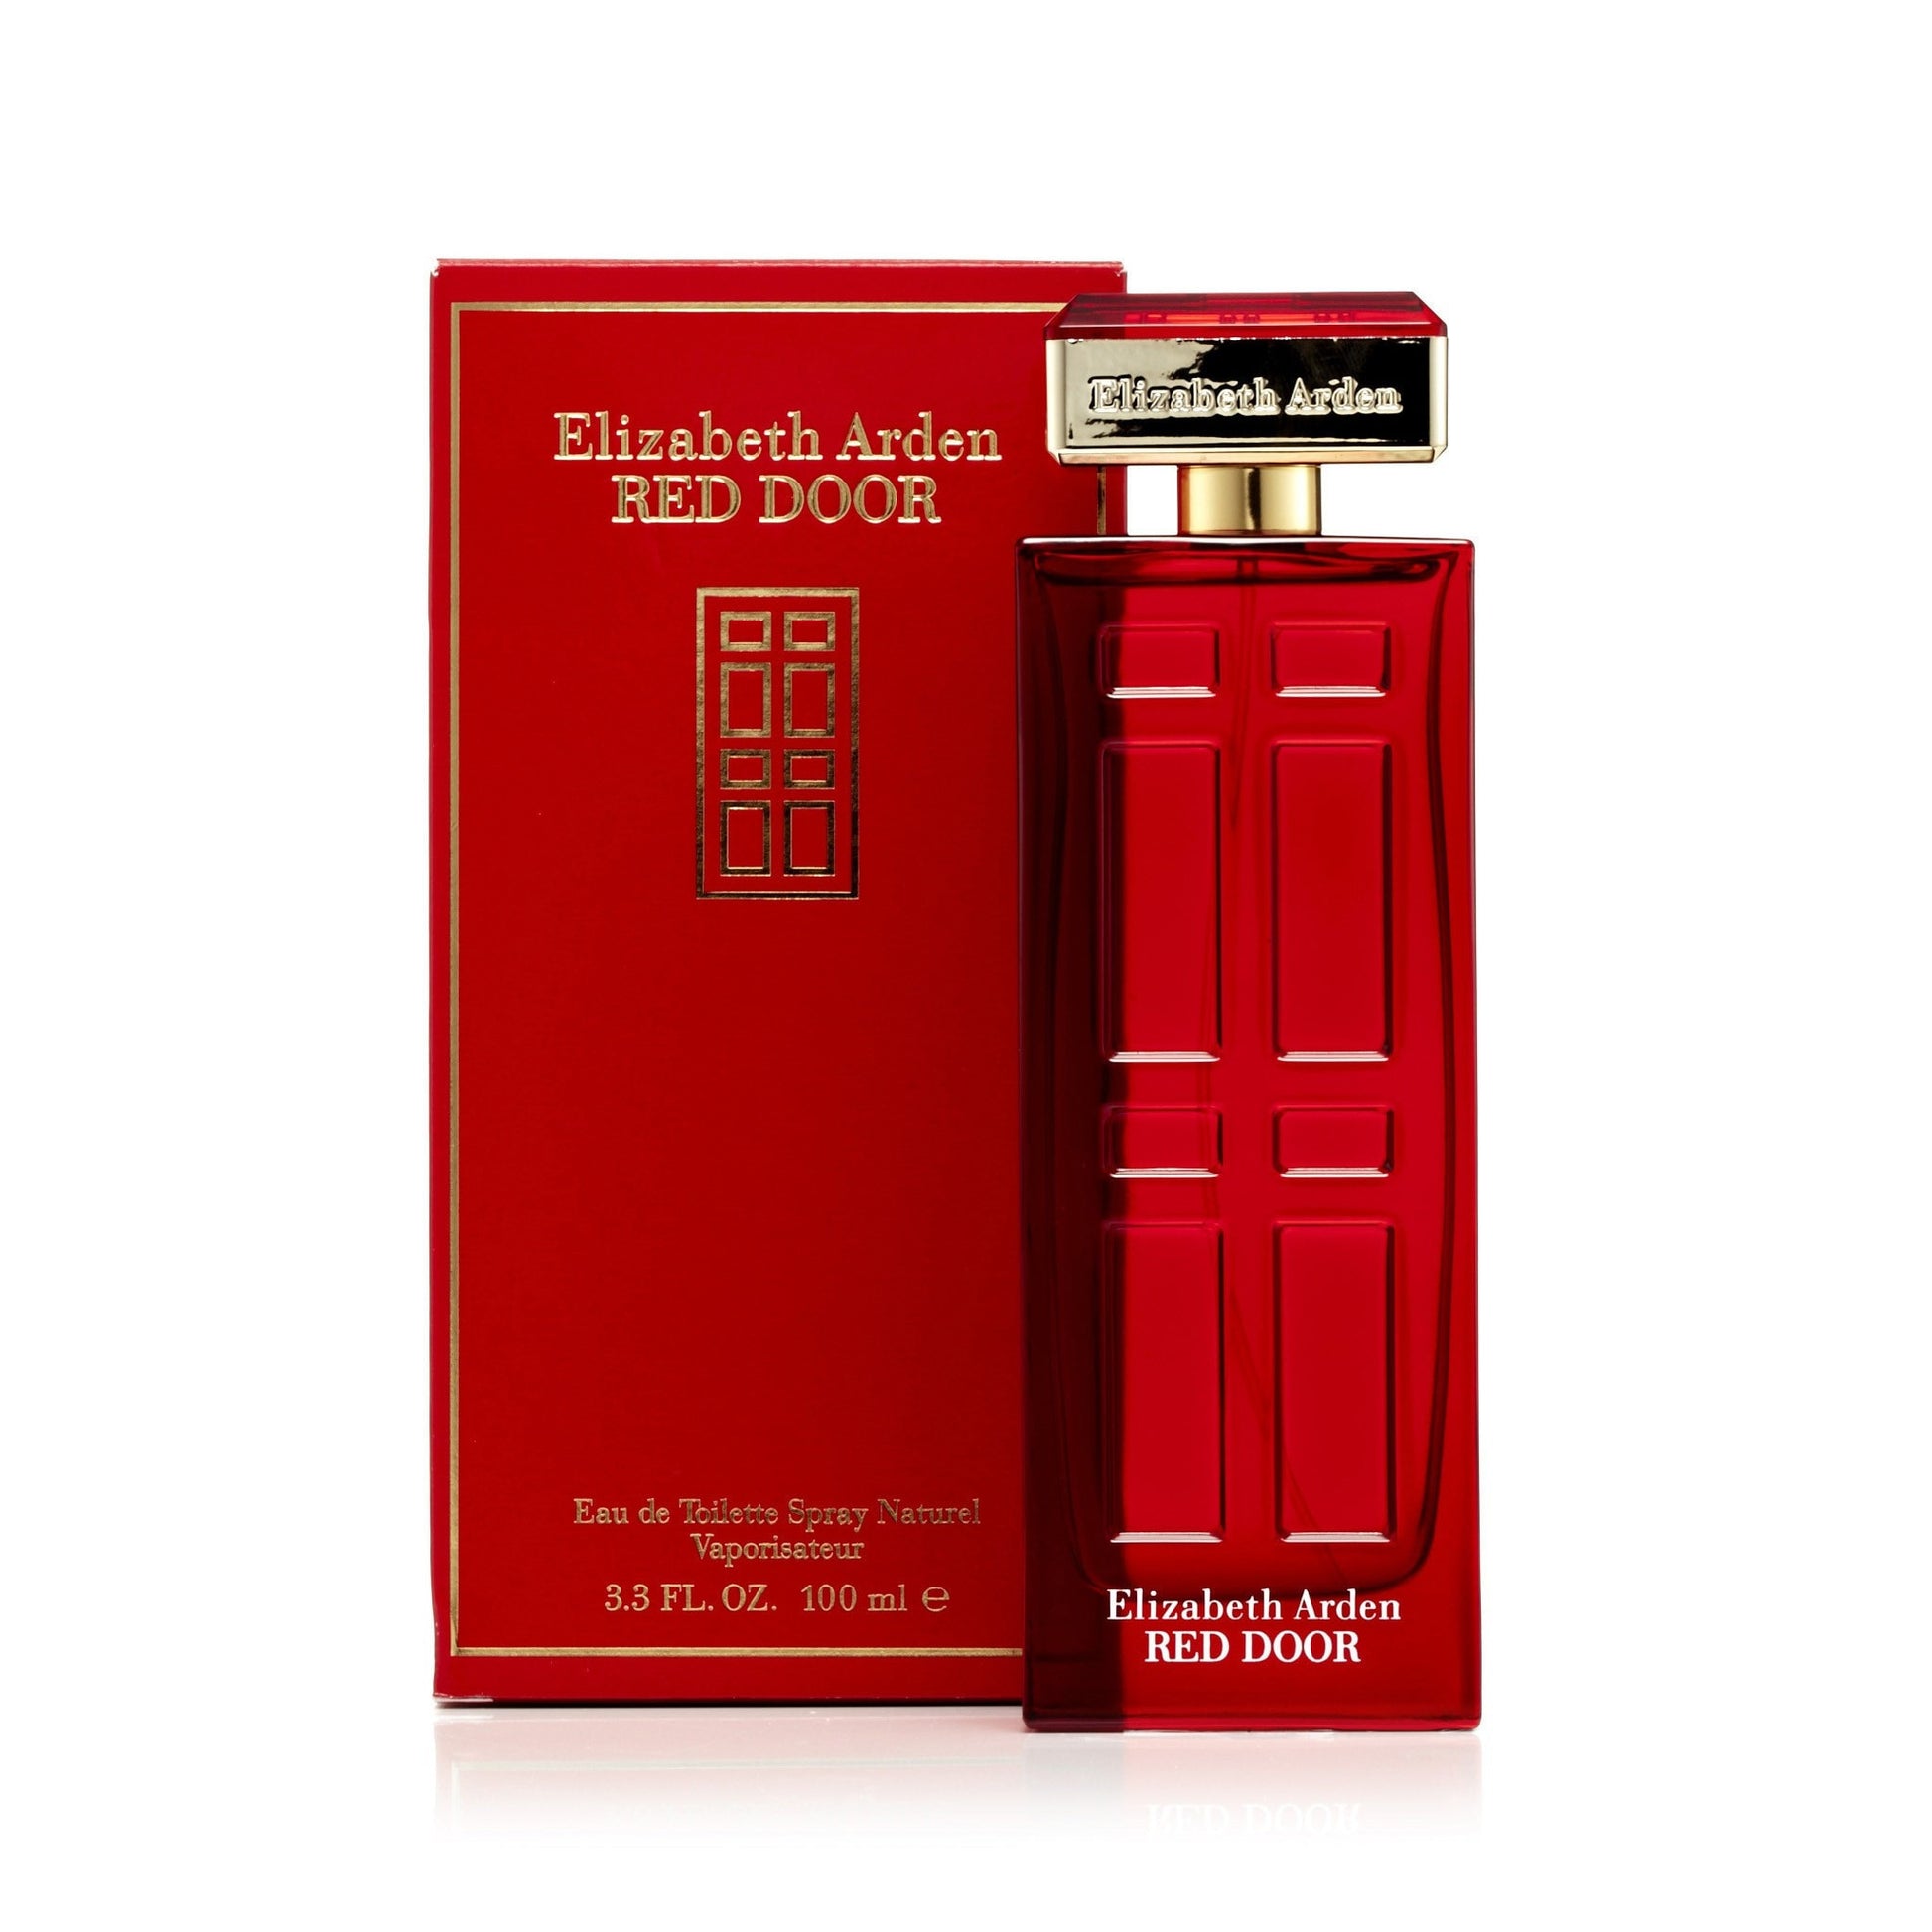 Red Door Eau de Toilette Spray for Women by Elizabeth Arden 3.4 oz. Click to open in modal